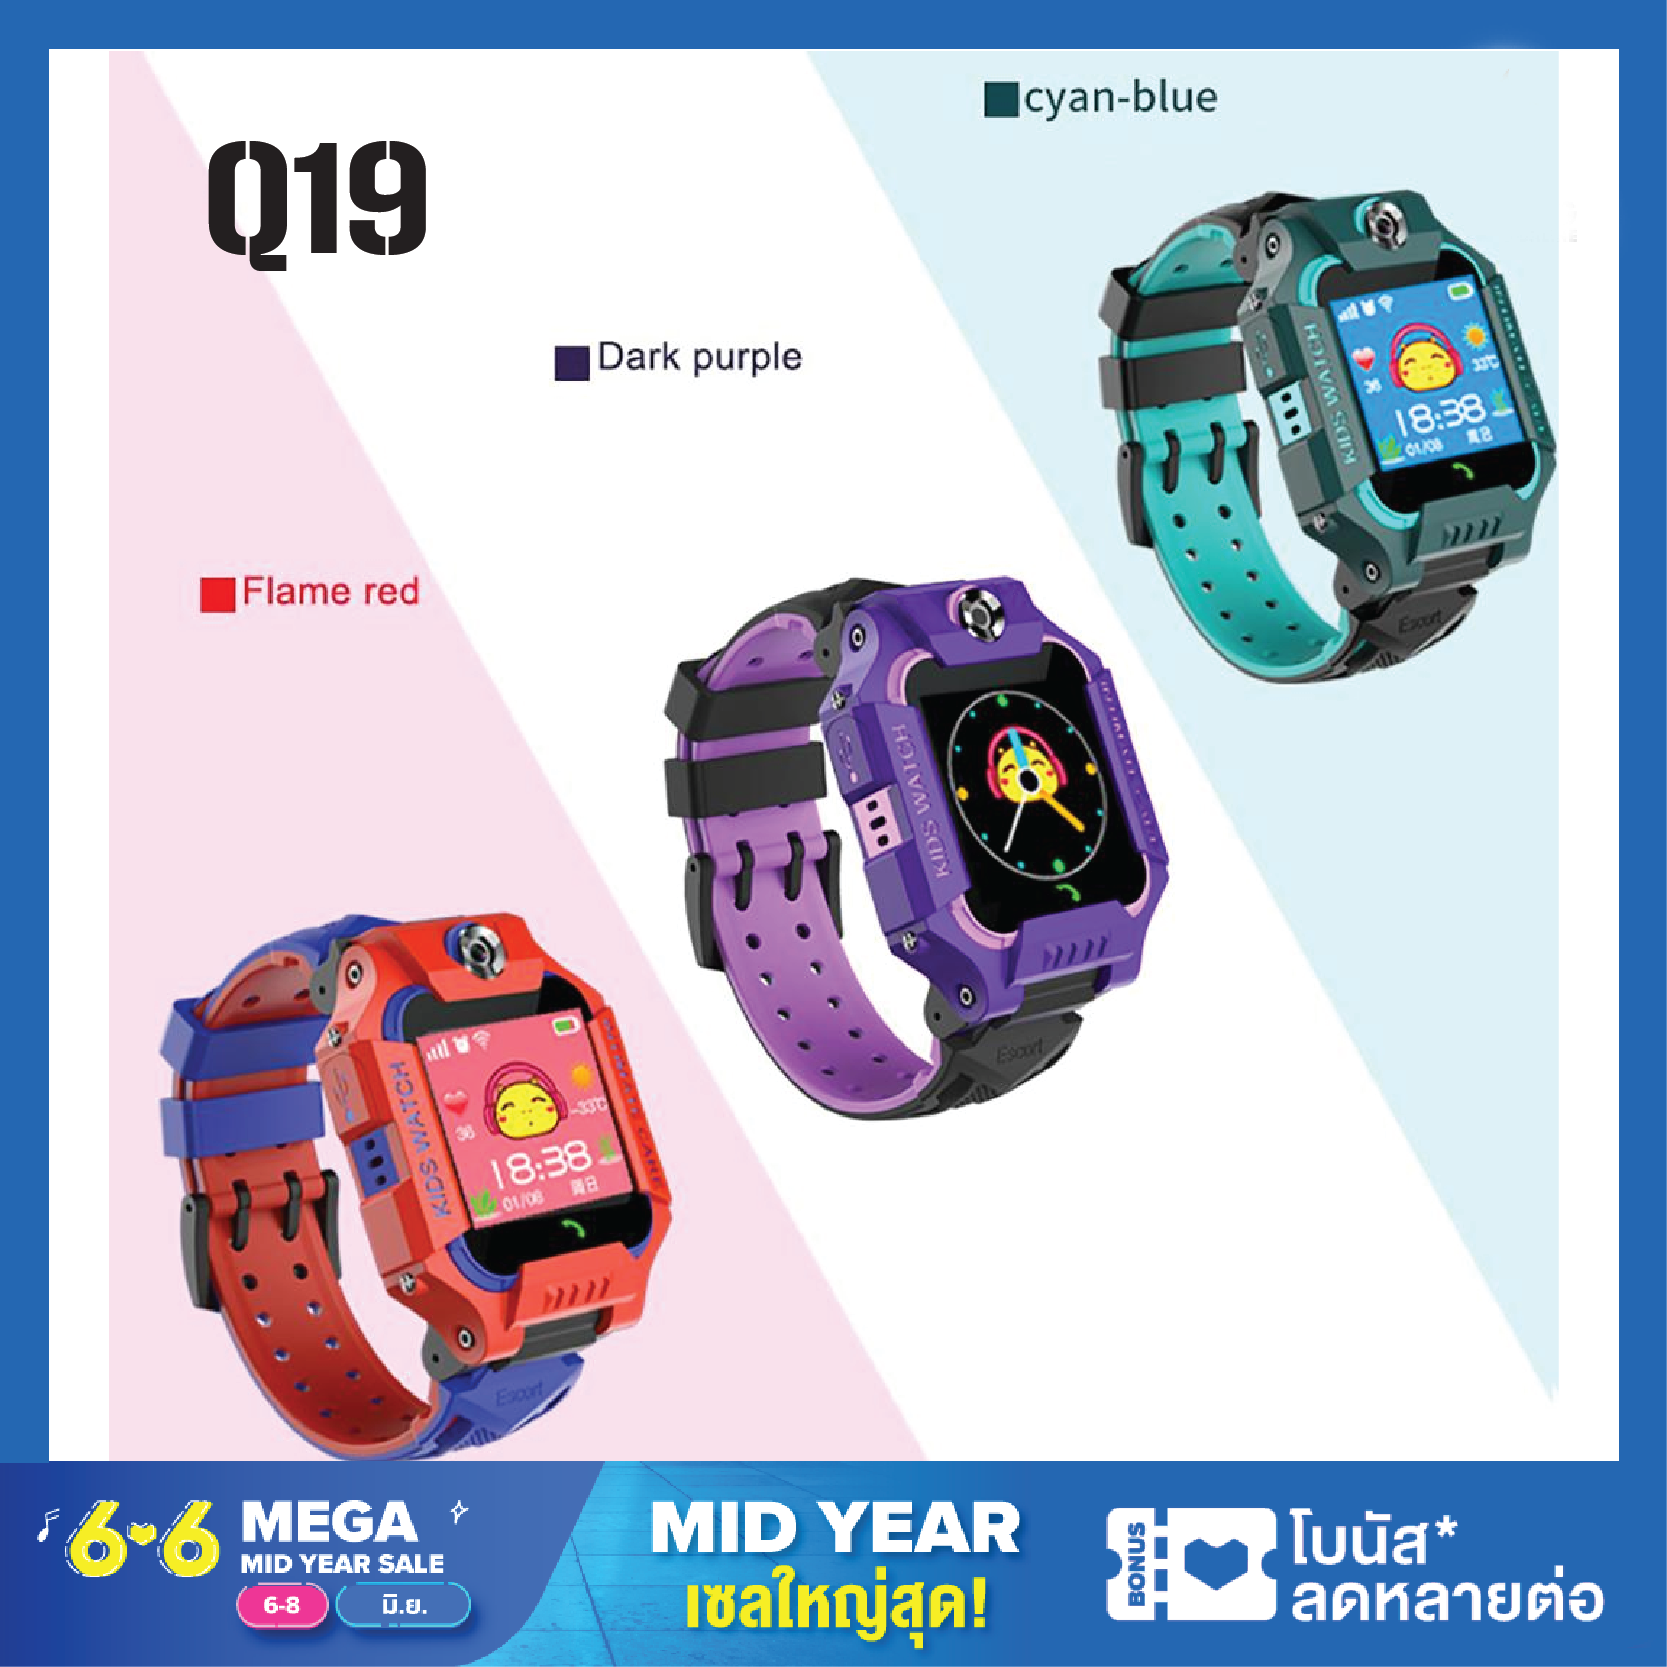 นาฬิกาเด็ก รุ่น Q19 นาฬิกาไอโมเด็กถูก กันน้ำ นาฬิกาไอโมเด็กz6 เมนูไทย มีเกมส์ ใส่ซิมได้ โทรได้ พร้อมระบบ GPS ติดตามตำแหน่ง Kid Smart Watch นาฬิกาป้องกันเด็กหาย ไอโม่ imoo จอสัมผัส เก็บเงินปลายทาง